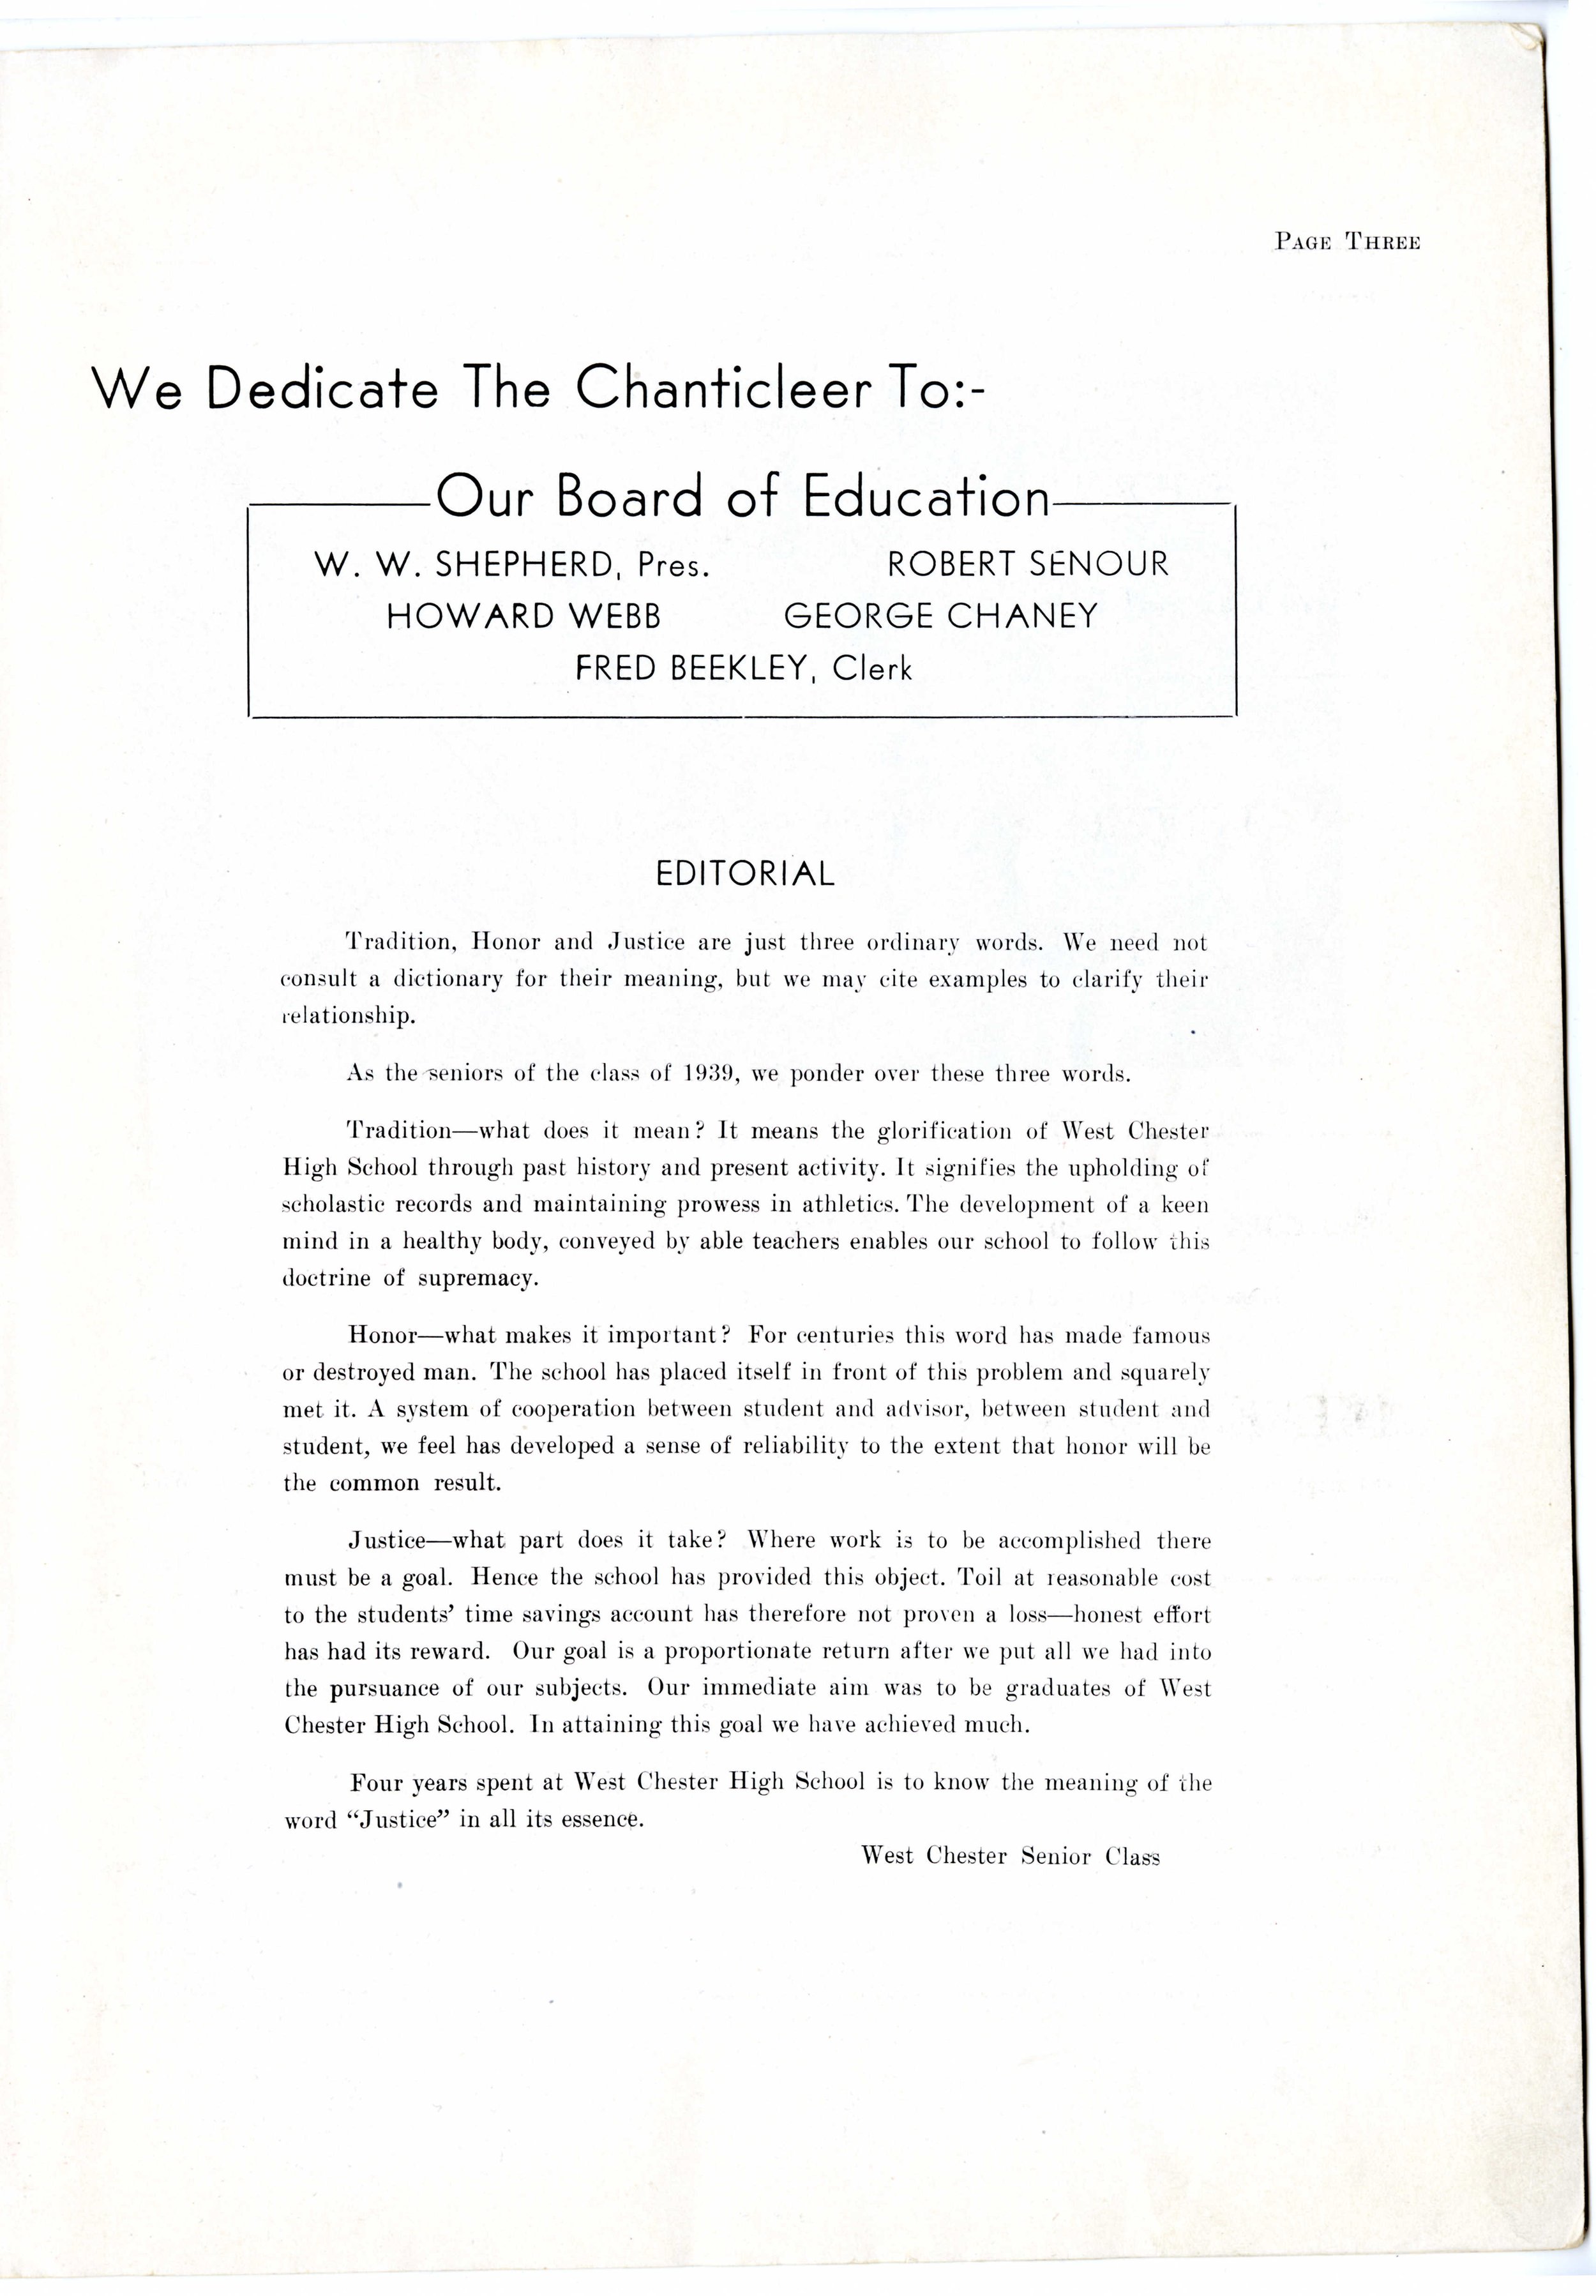 Chanticleer 1939